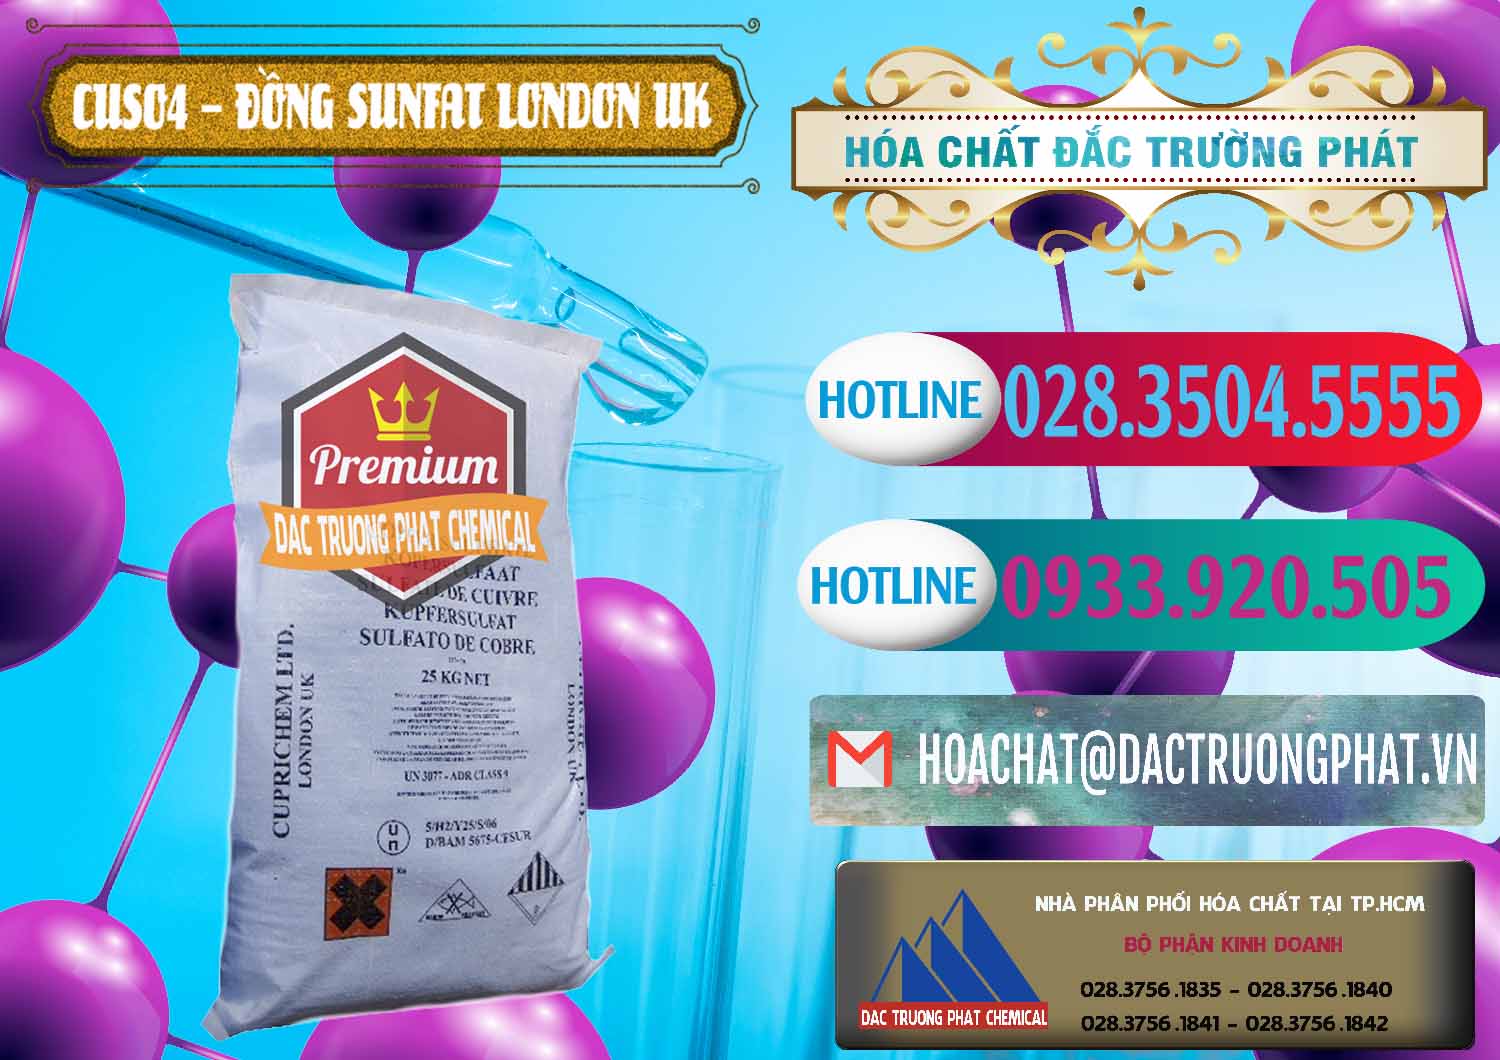 Công ty bán _ cung cấp CuSO4 – Đồng Sunfat Anh Uk Kingdoms - 0478 - Công ty cung ứng ( phân phối ) hóa chất tại TP.HCM - truongphat.vn